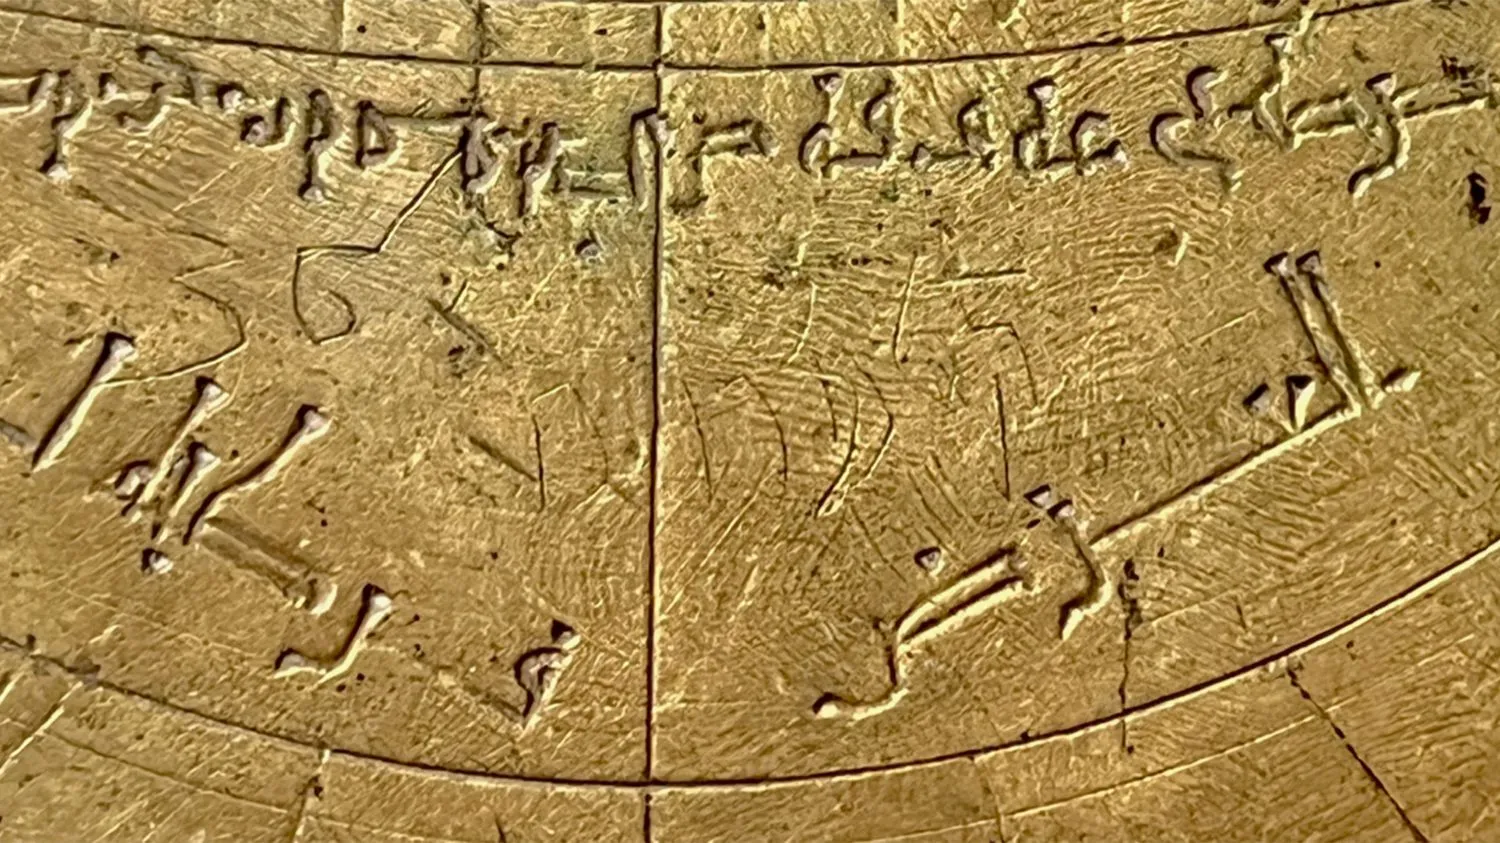 Nahaufnahme eines astronomischen Instruments aus Bronze mit arabischen und hebräischen Markierungen und westlichen Ziffern.